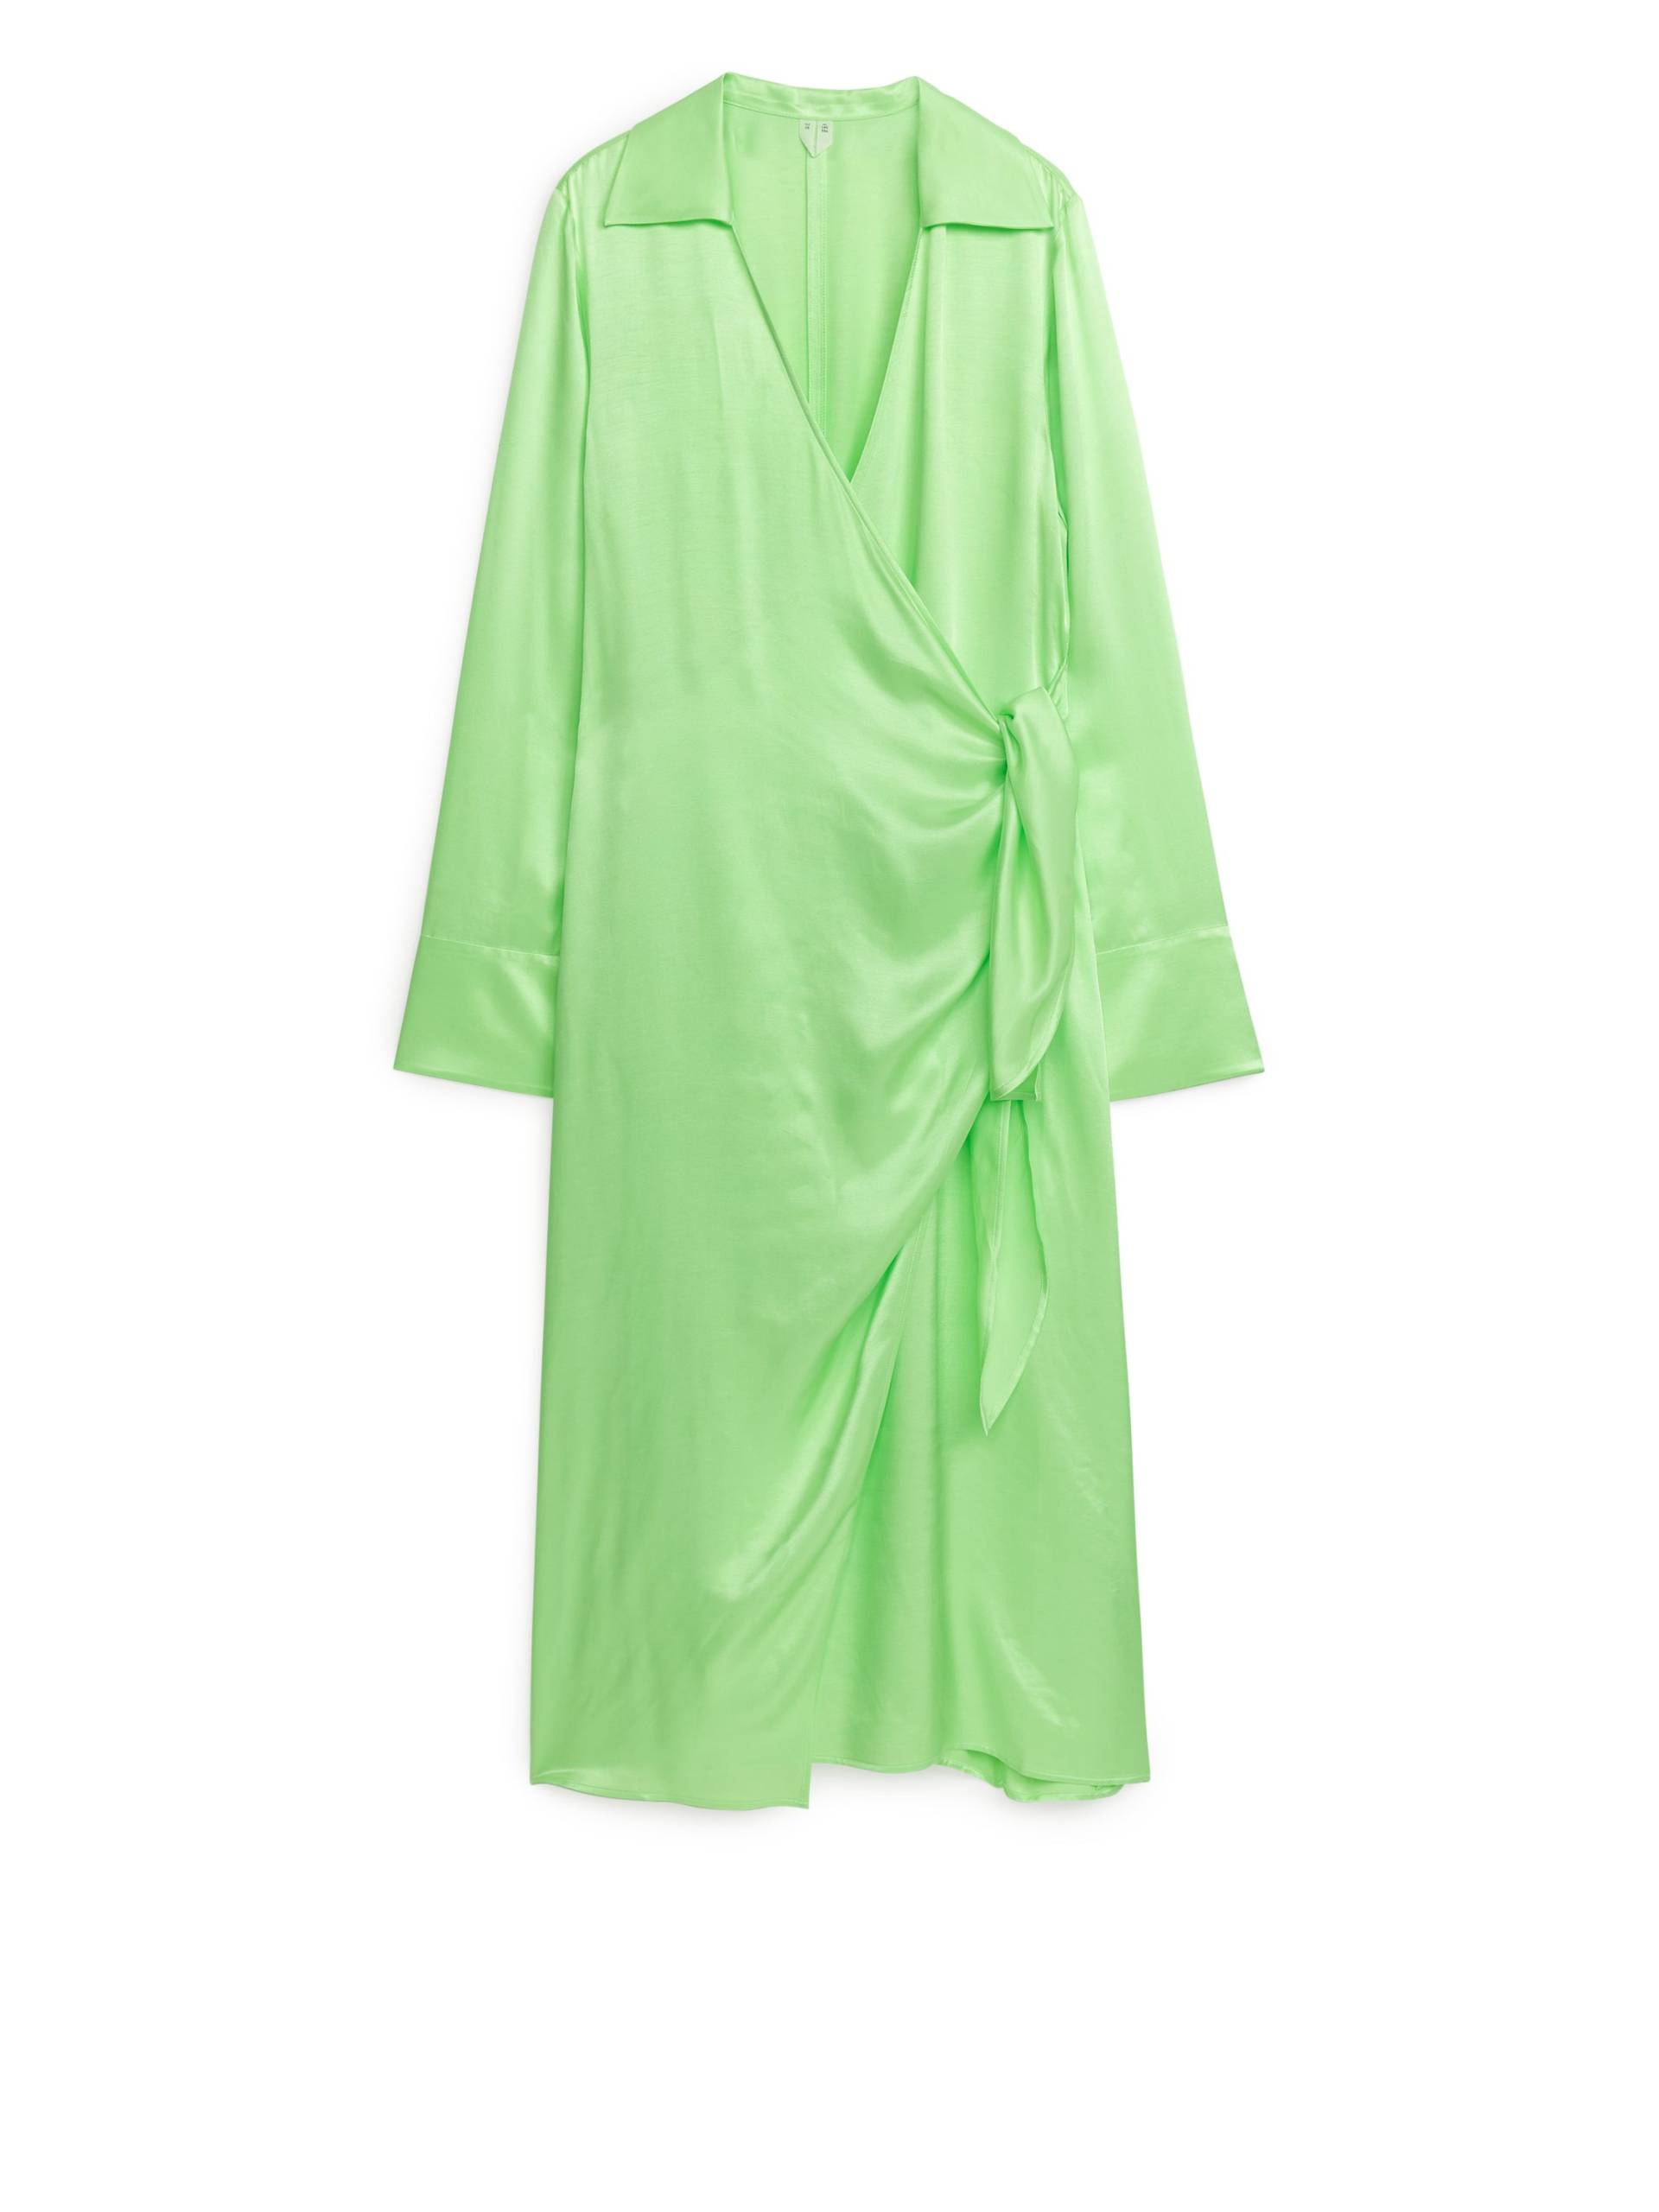 Arket Wickelkleid Hellgrün, Party kleider in Größe 38. Farbe: Light green von Arket